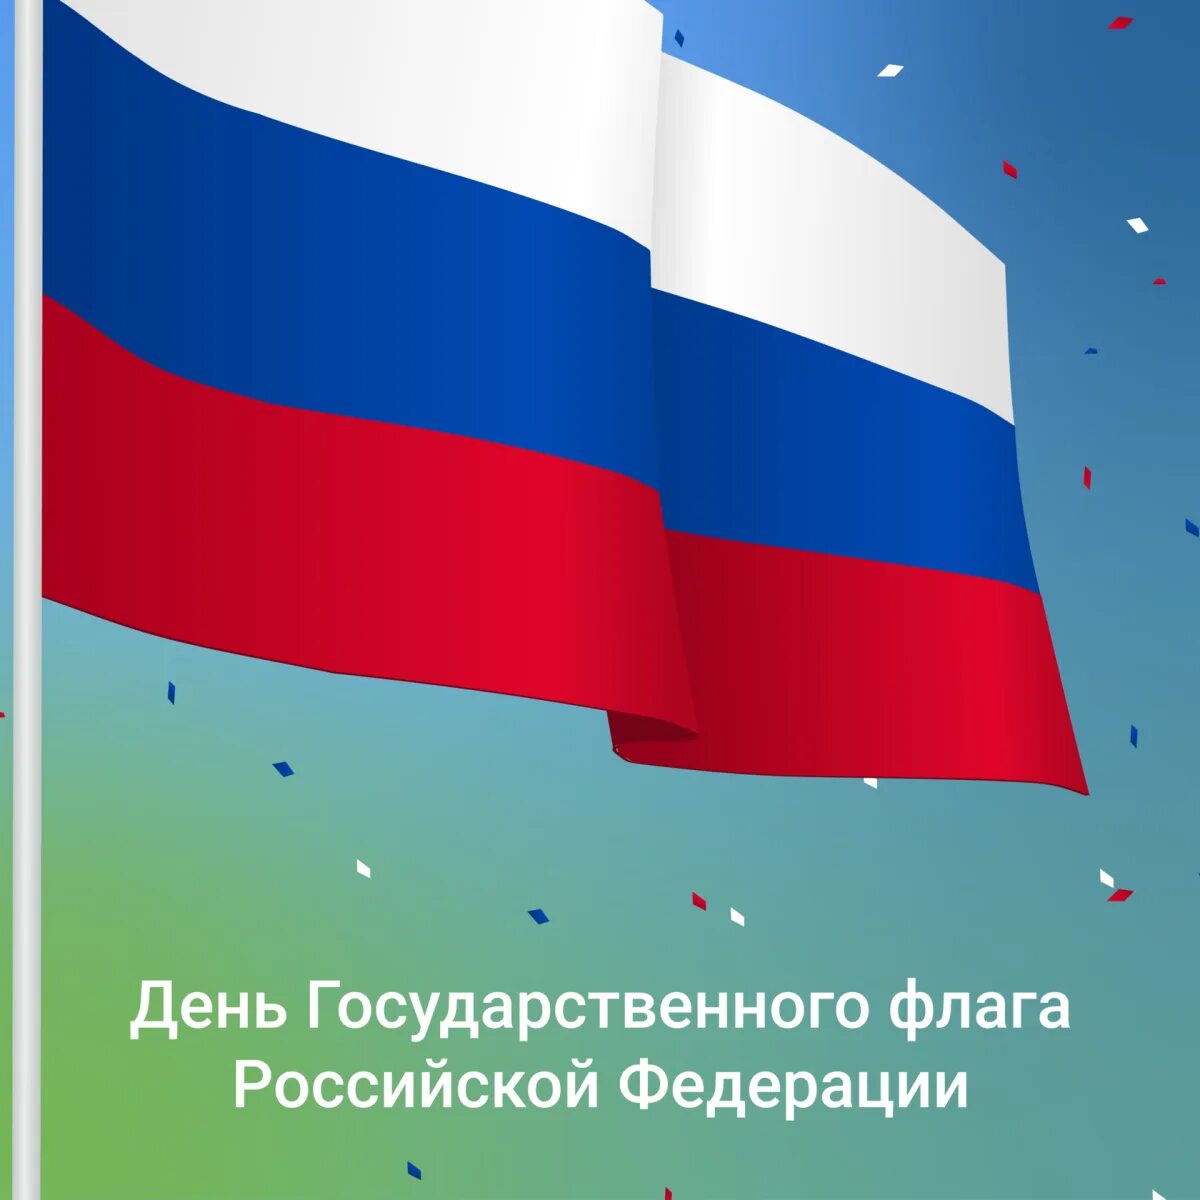 Почему 22 августа день государственного флага. День государственного флага. 22 Августа день государственного флага. Флаг России 22 августа. День государственного флага Российской Федерации 2020.